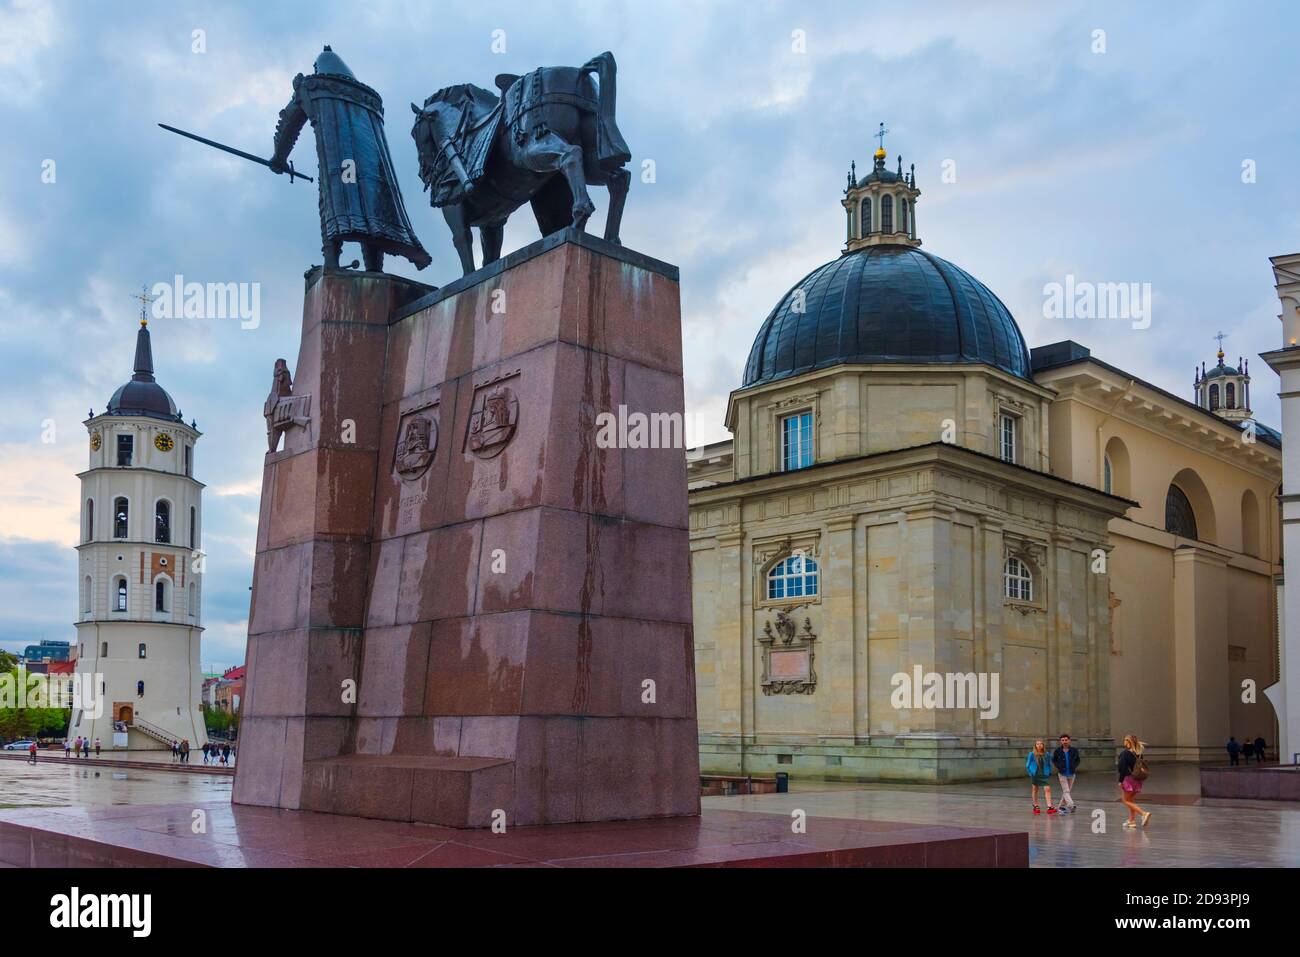 Monument au Grand-Duc Gediminas et à la cathédrale de Vilnius, Vilnius, Lituanie Banque D'Images